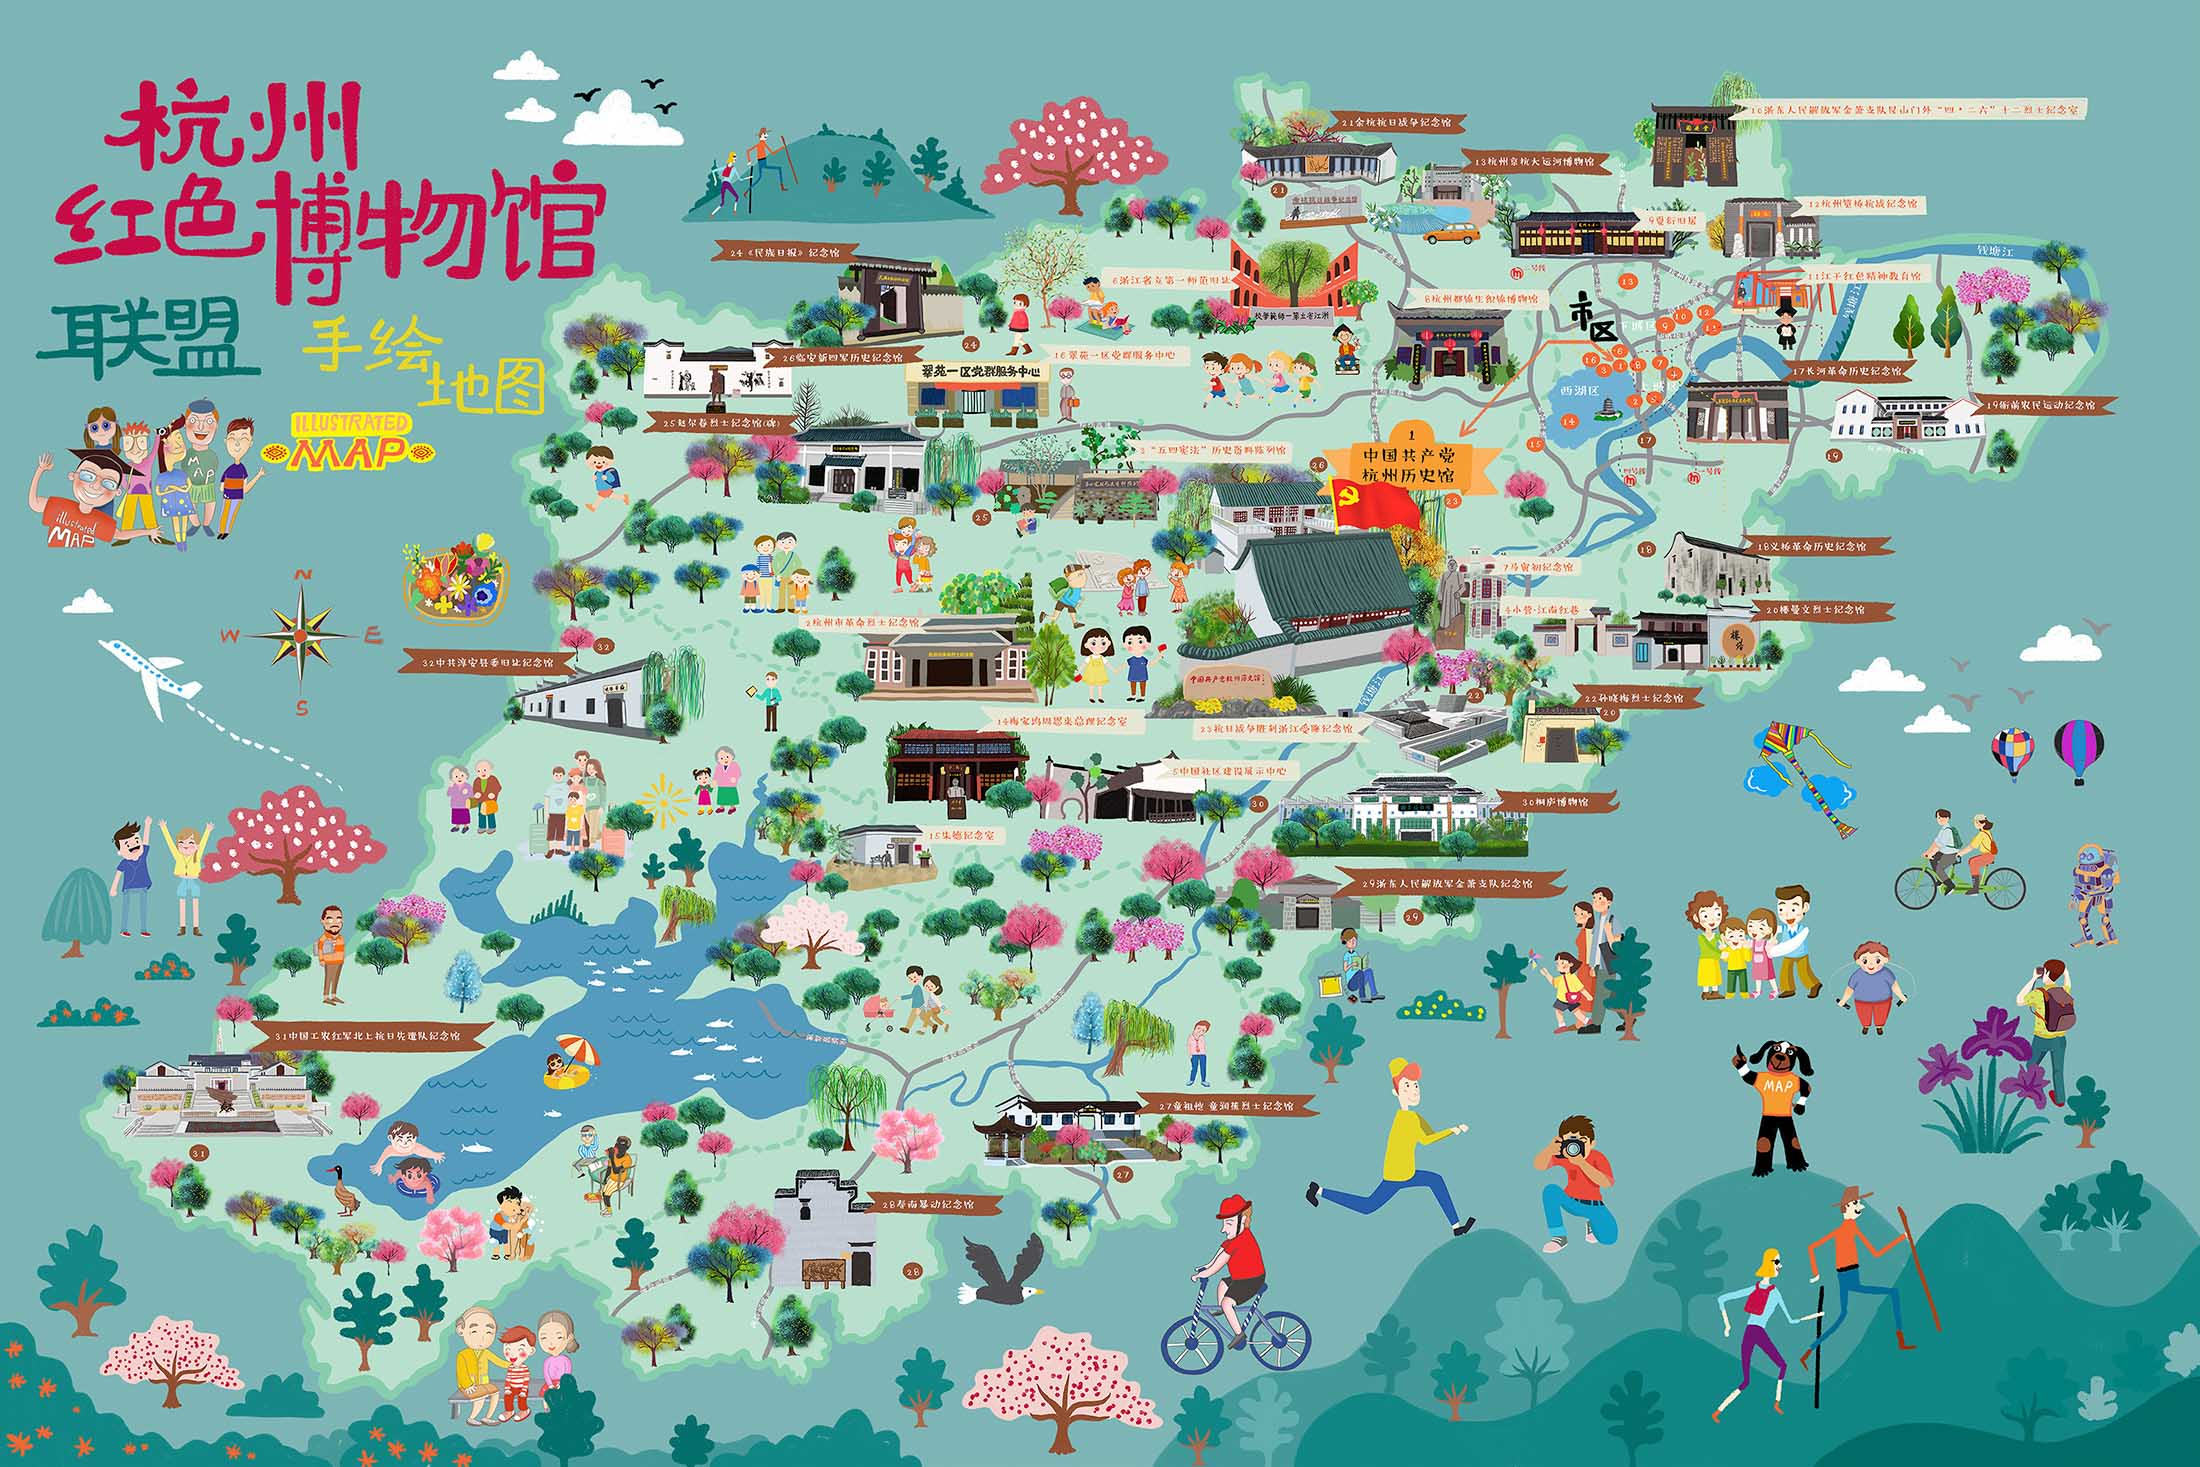 麻洋镇手绘地图与科技的完美结合 